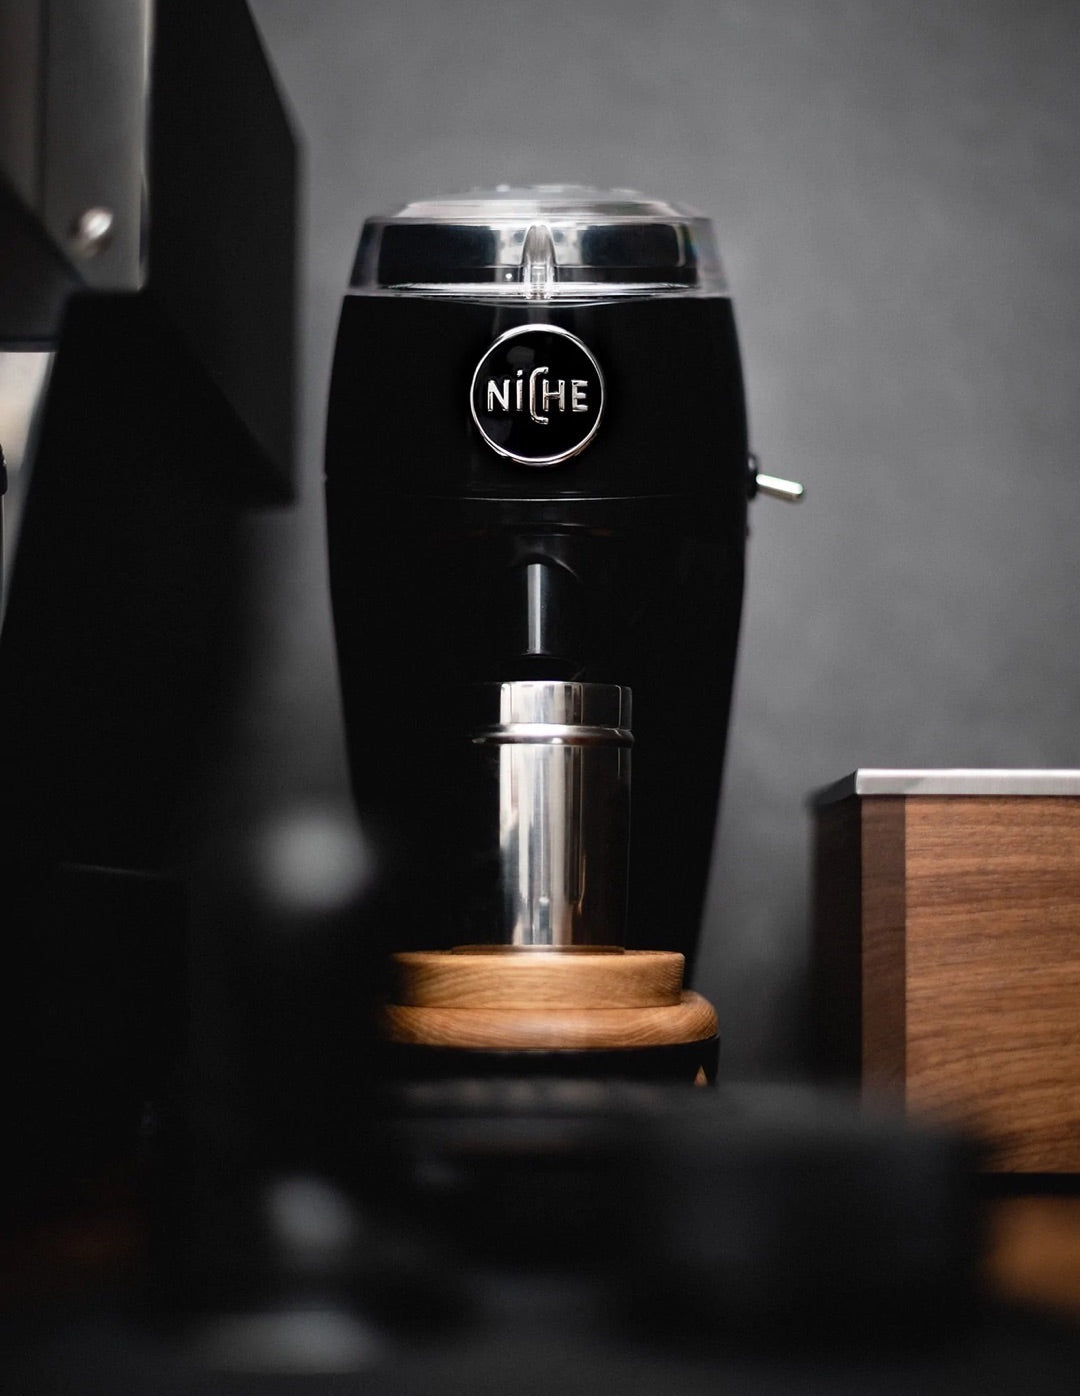 The Best Flat Burr Coffee Grinder - The Niche Duo – Niche Coffee Ltd